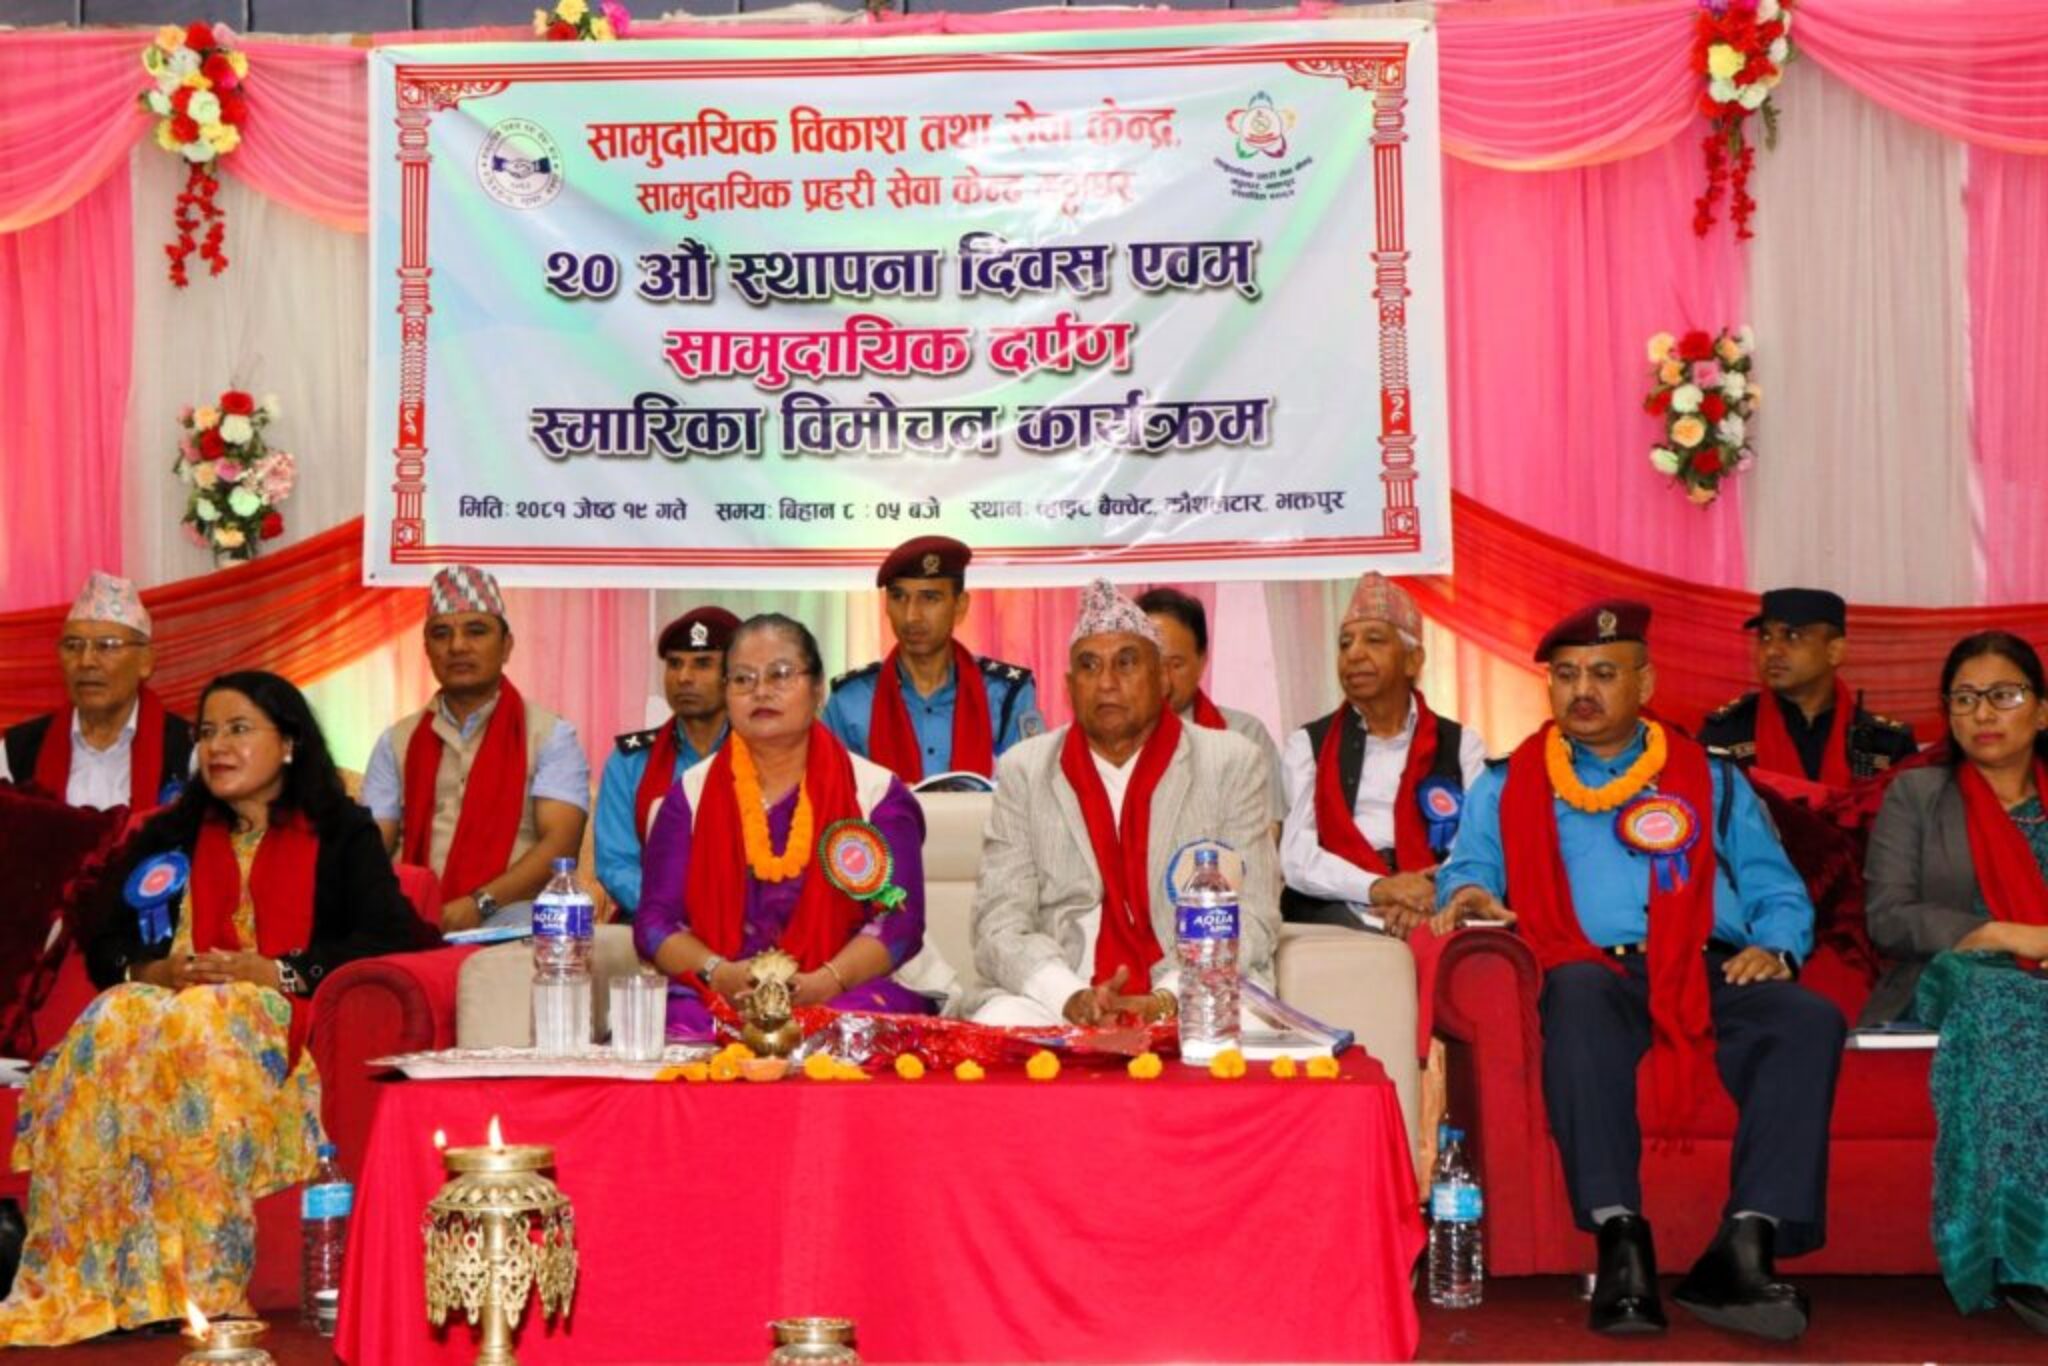 Bhagbati-Chaudhary-Minister-Bhaktapur-19-Jestha-2081 (4)